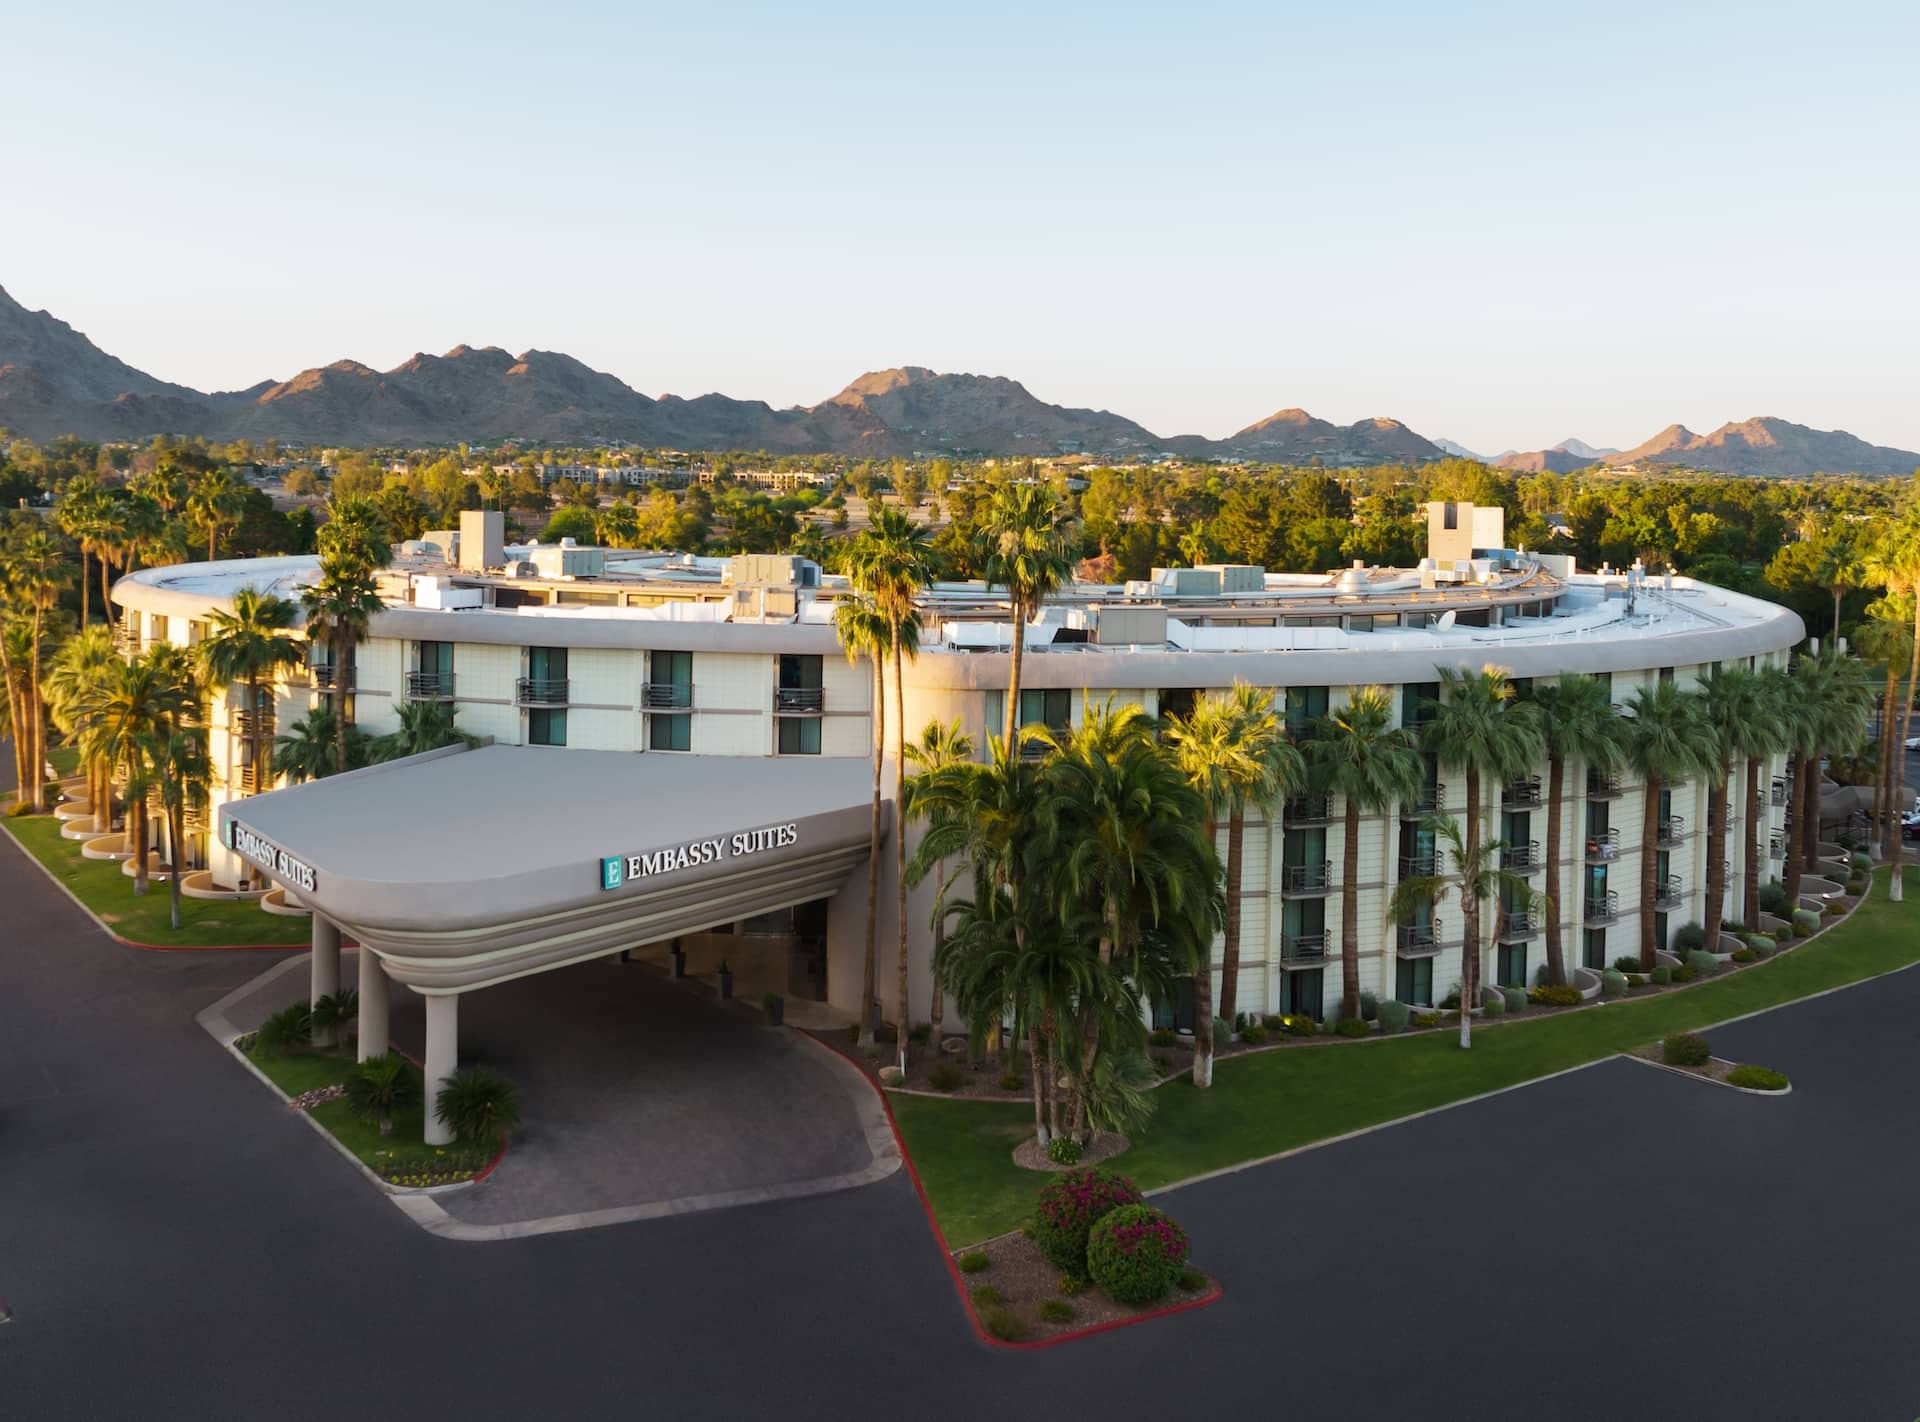 Photo of Embassy Suites by Hilton Phoenix Biltmore, Phoenix, AZ